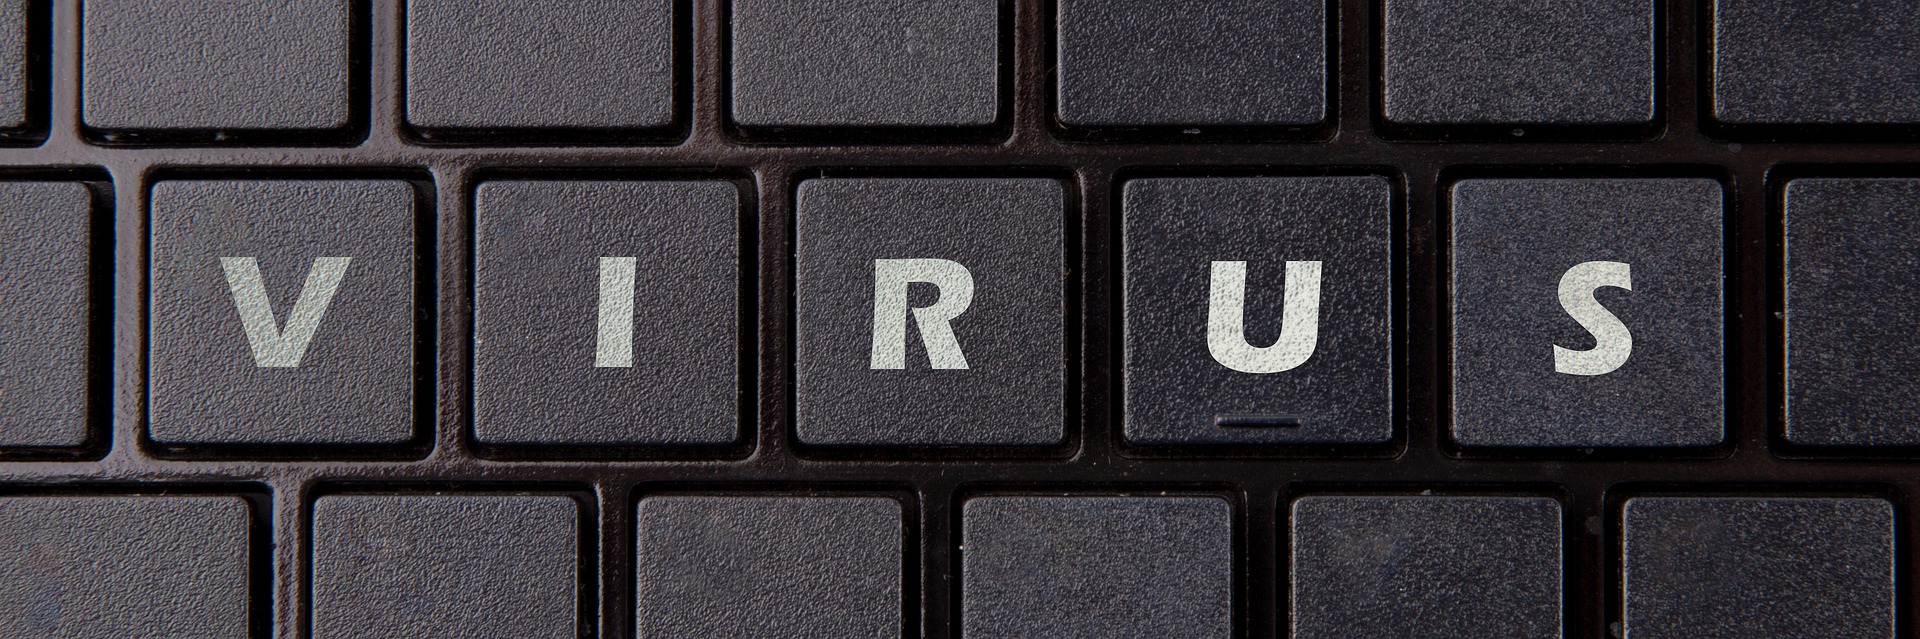 Bild einer Tastatur mit Beschriftung "Virus"